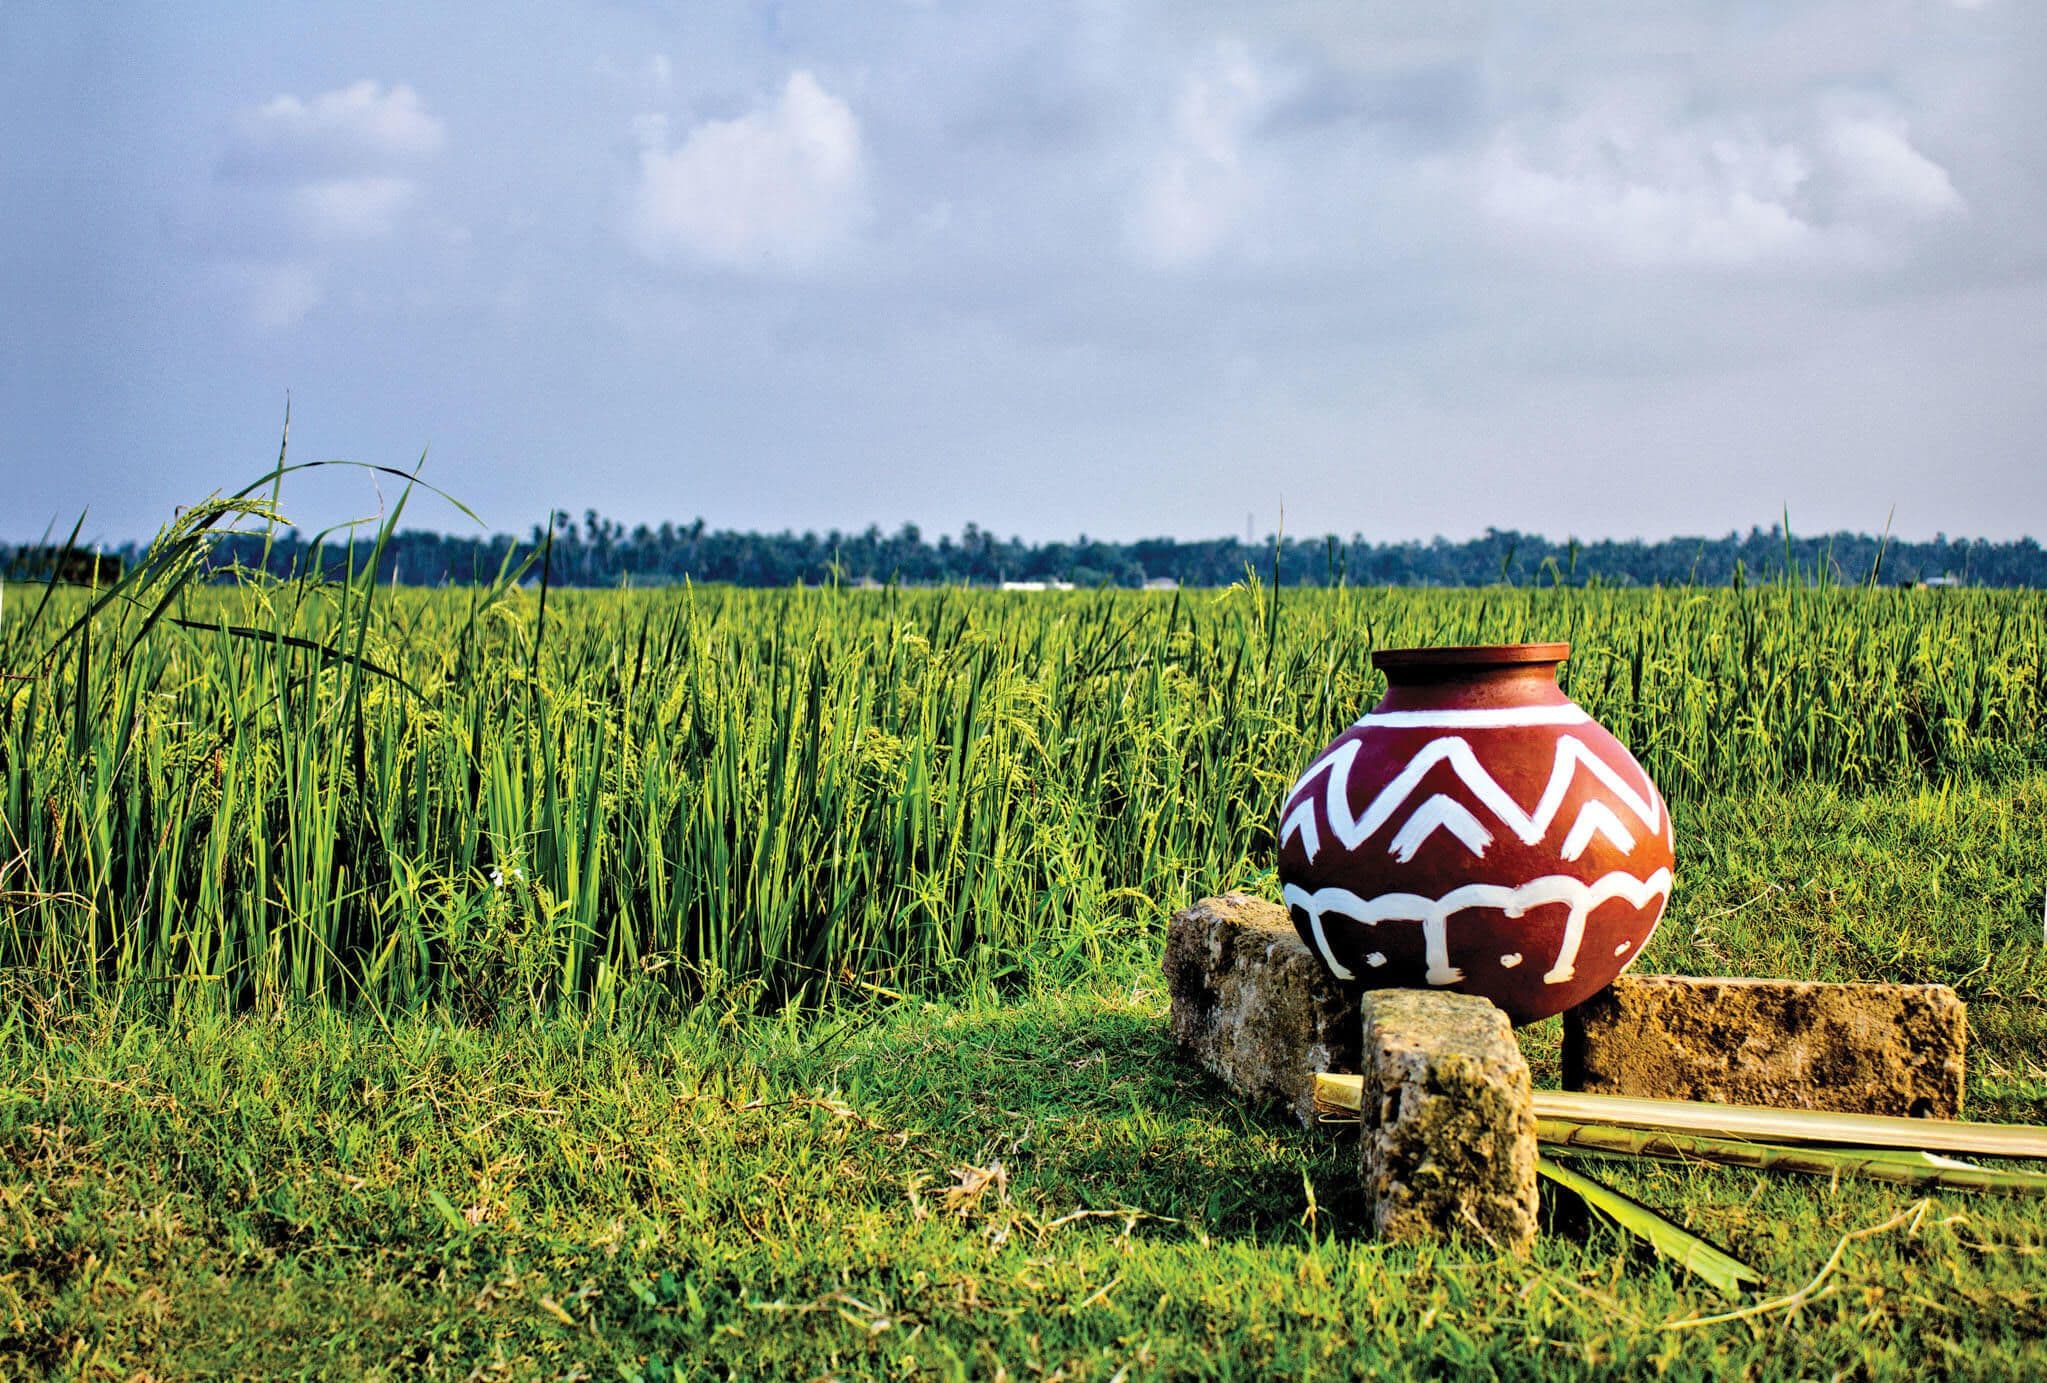 Надпись на глиняном горшке для приготовления чая в засушливой зоне Шри-Ланки.